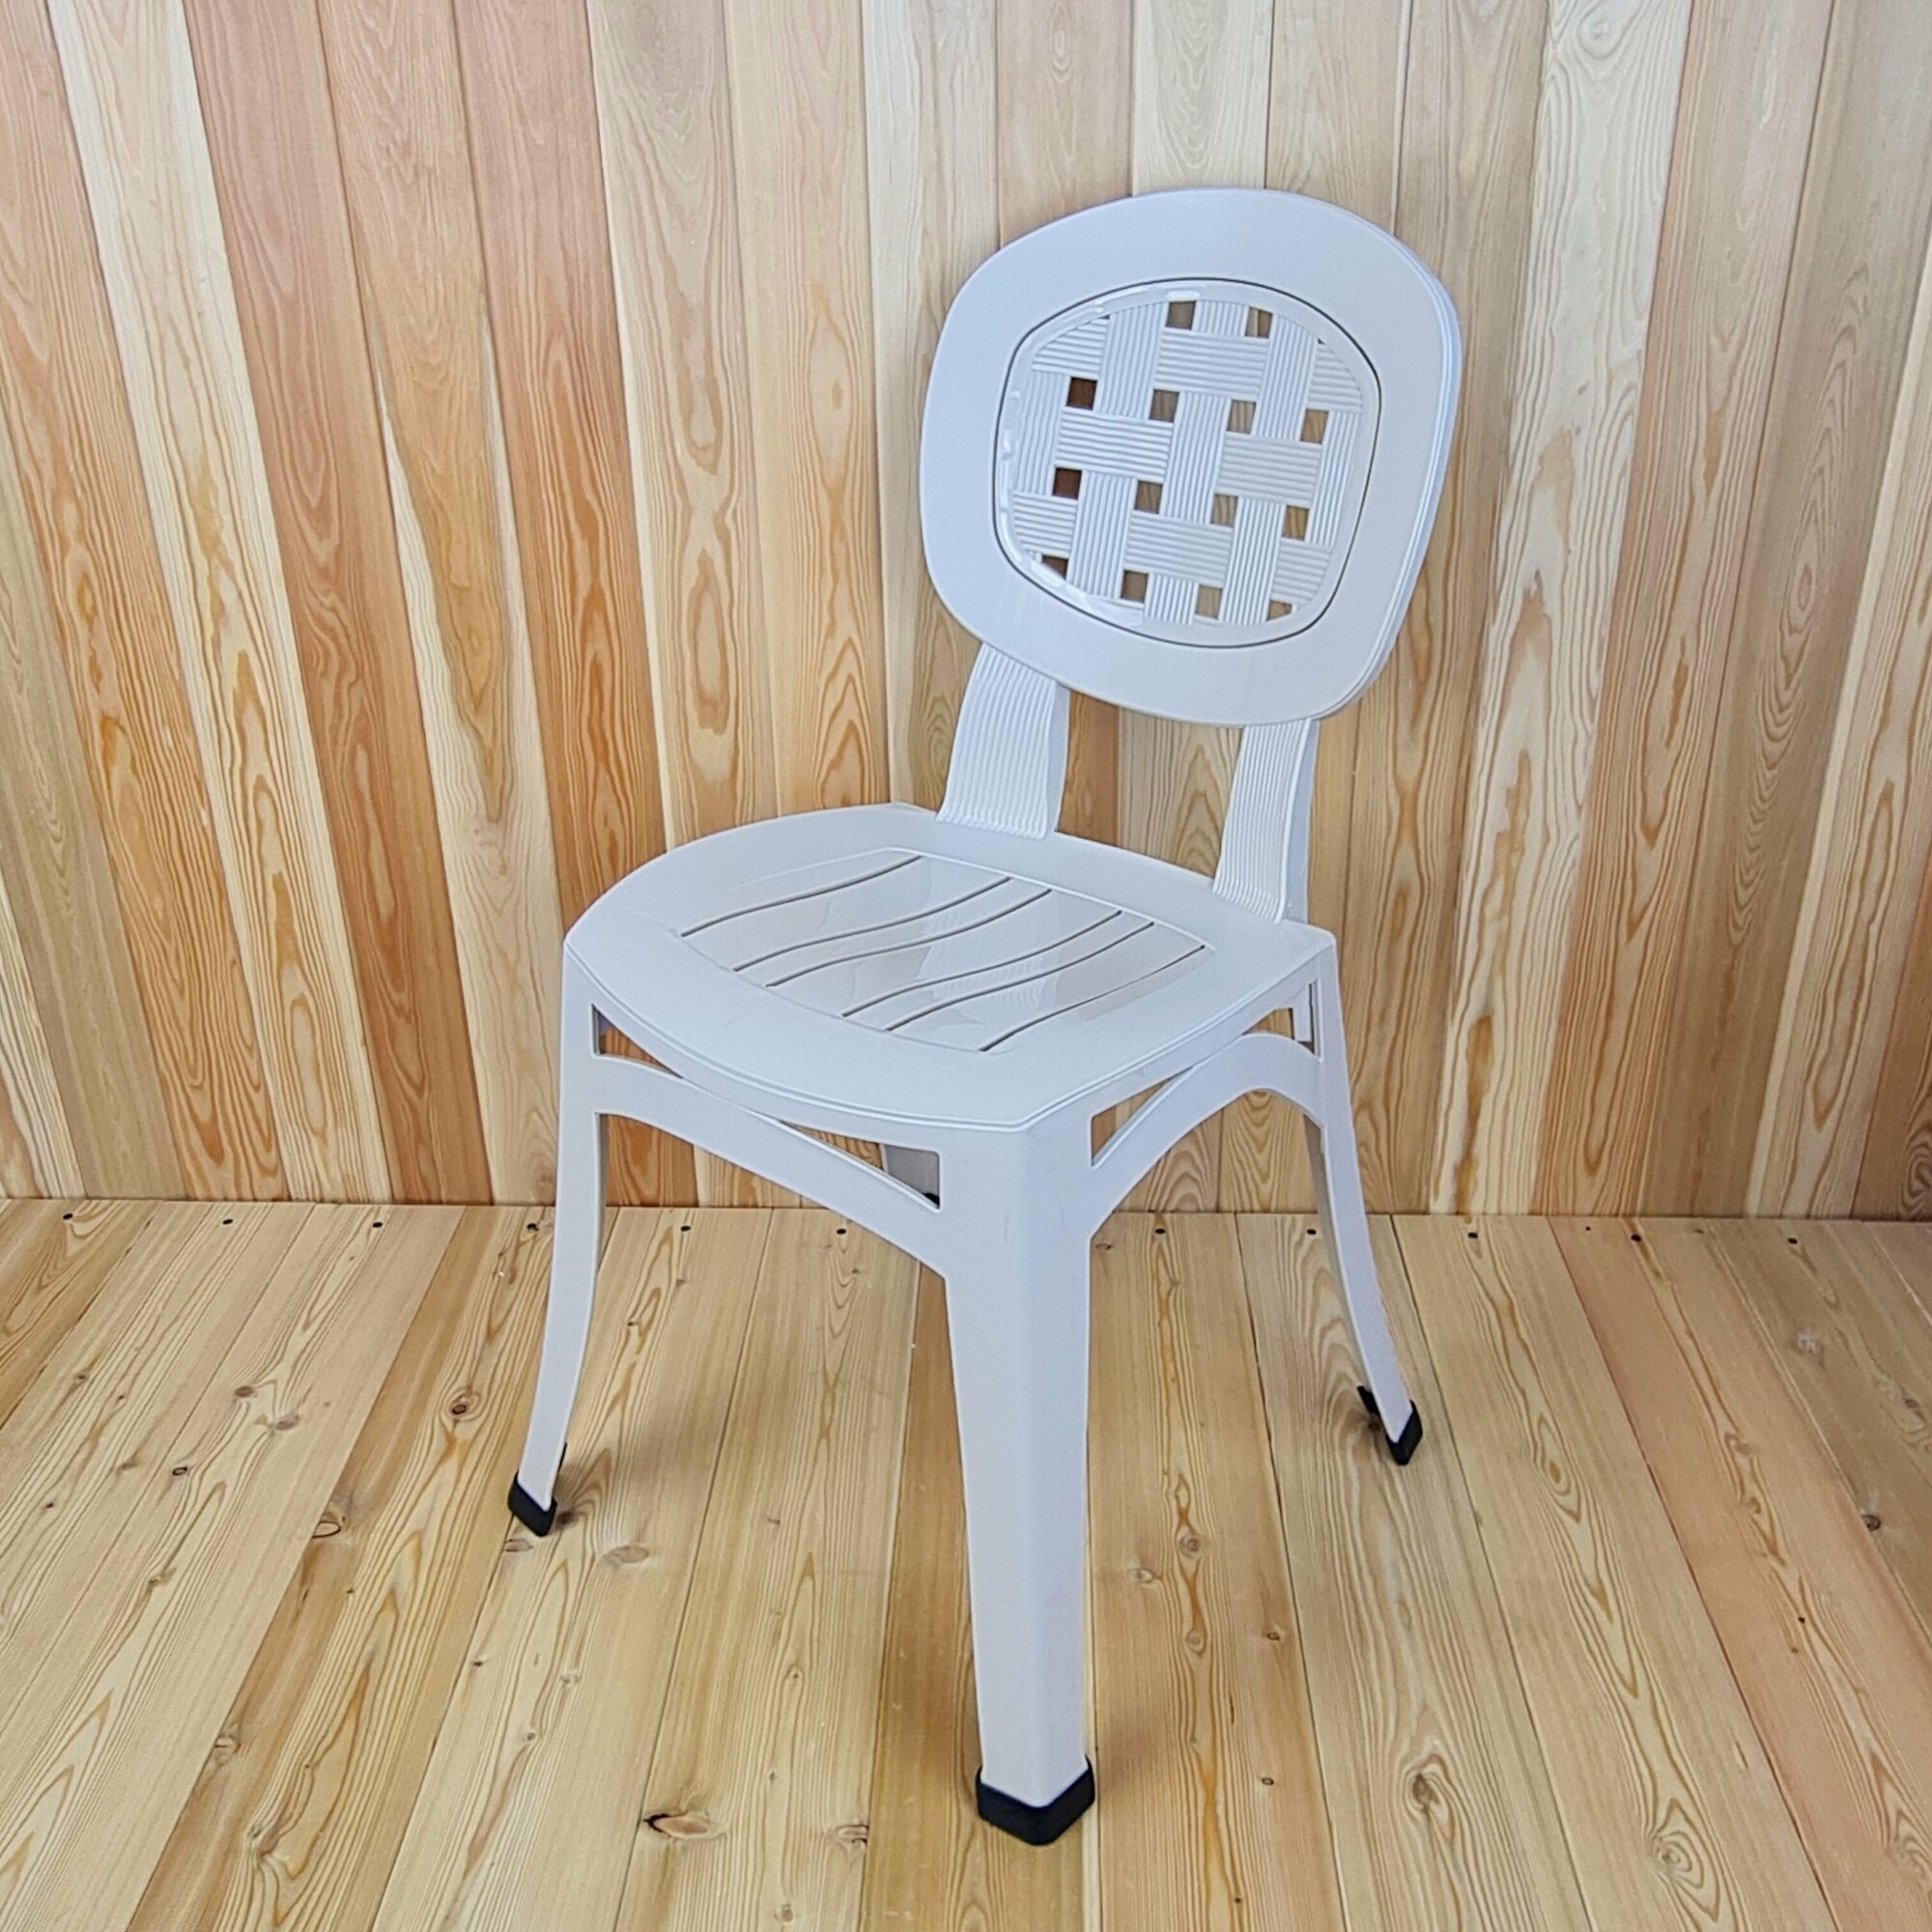 Самый крепкий стул" - пластиковый стул "Элегант" от бренда "Элластик-Пласт